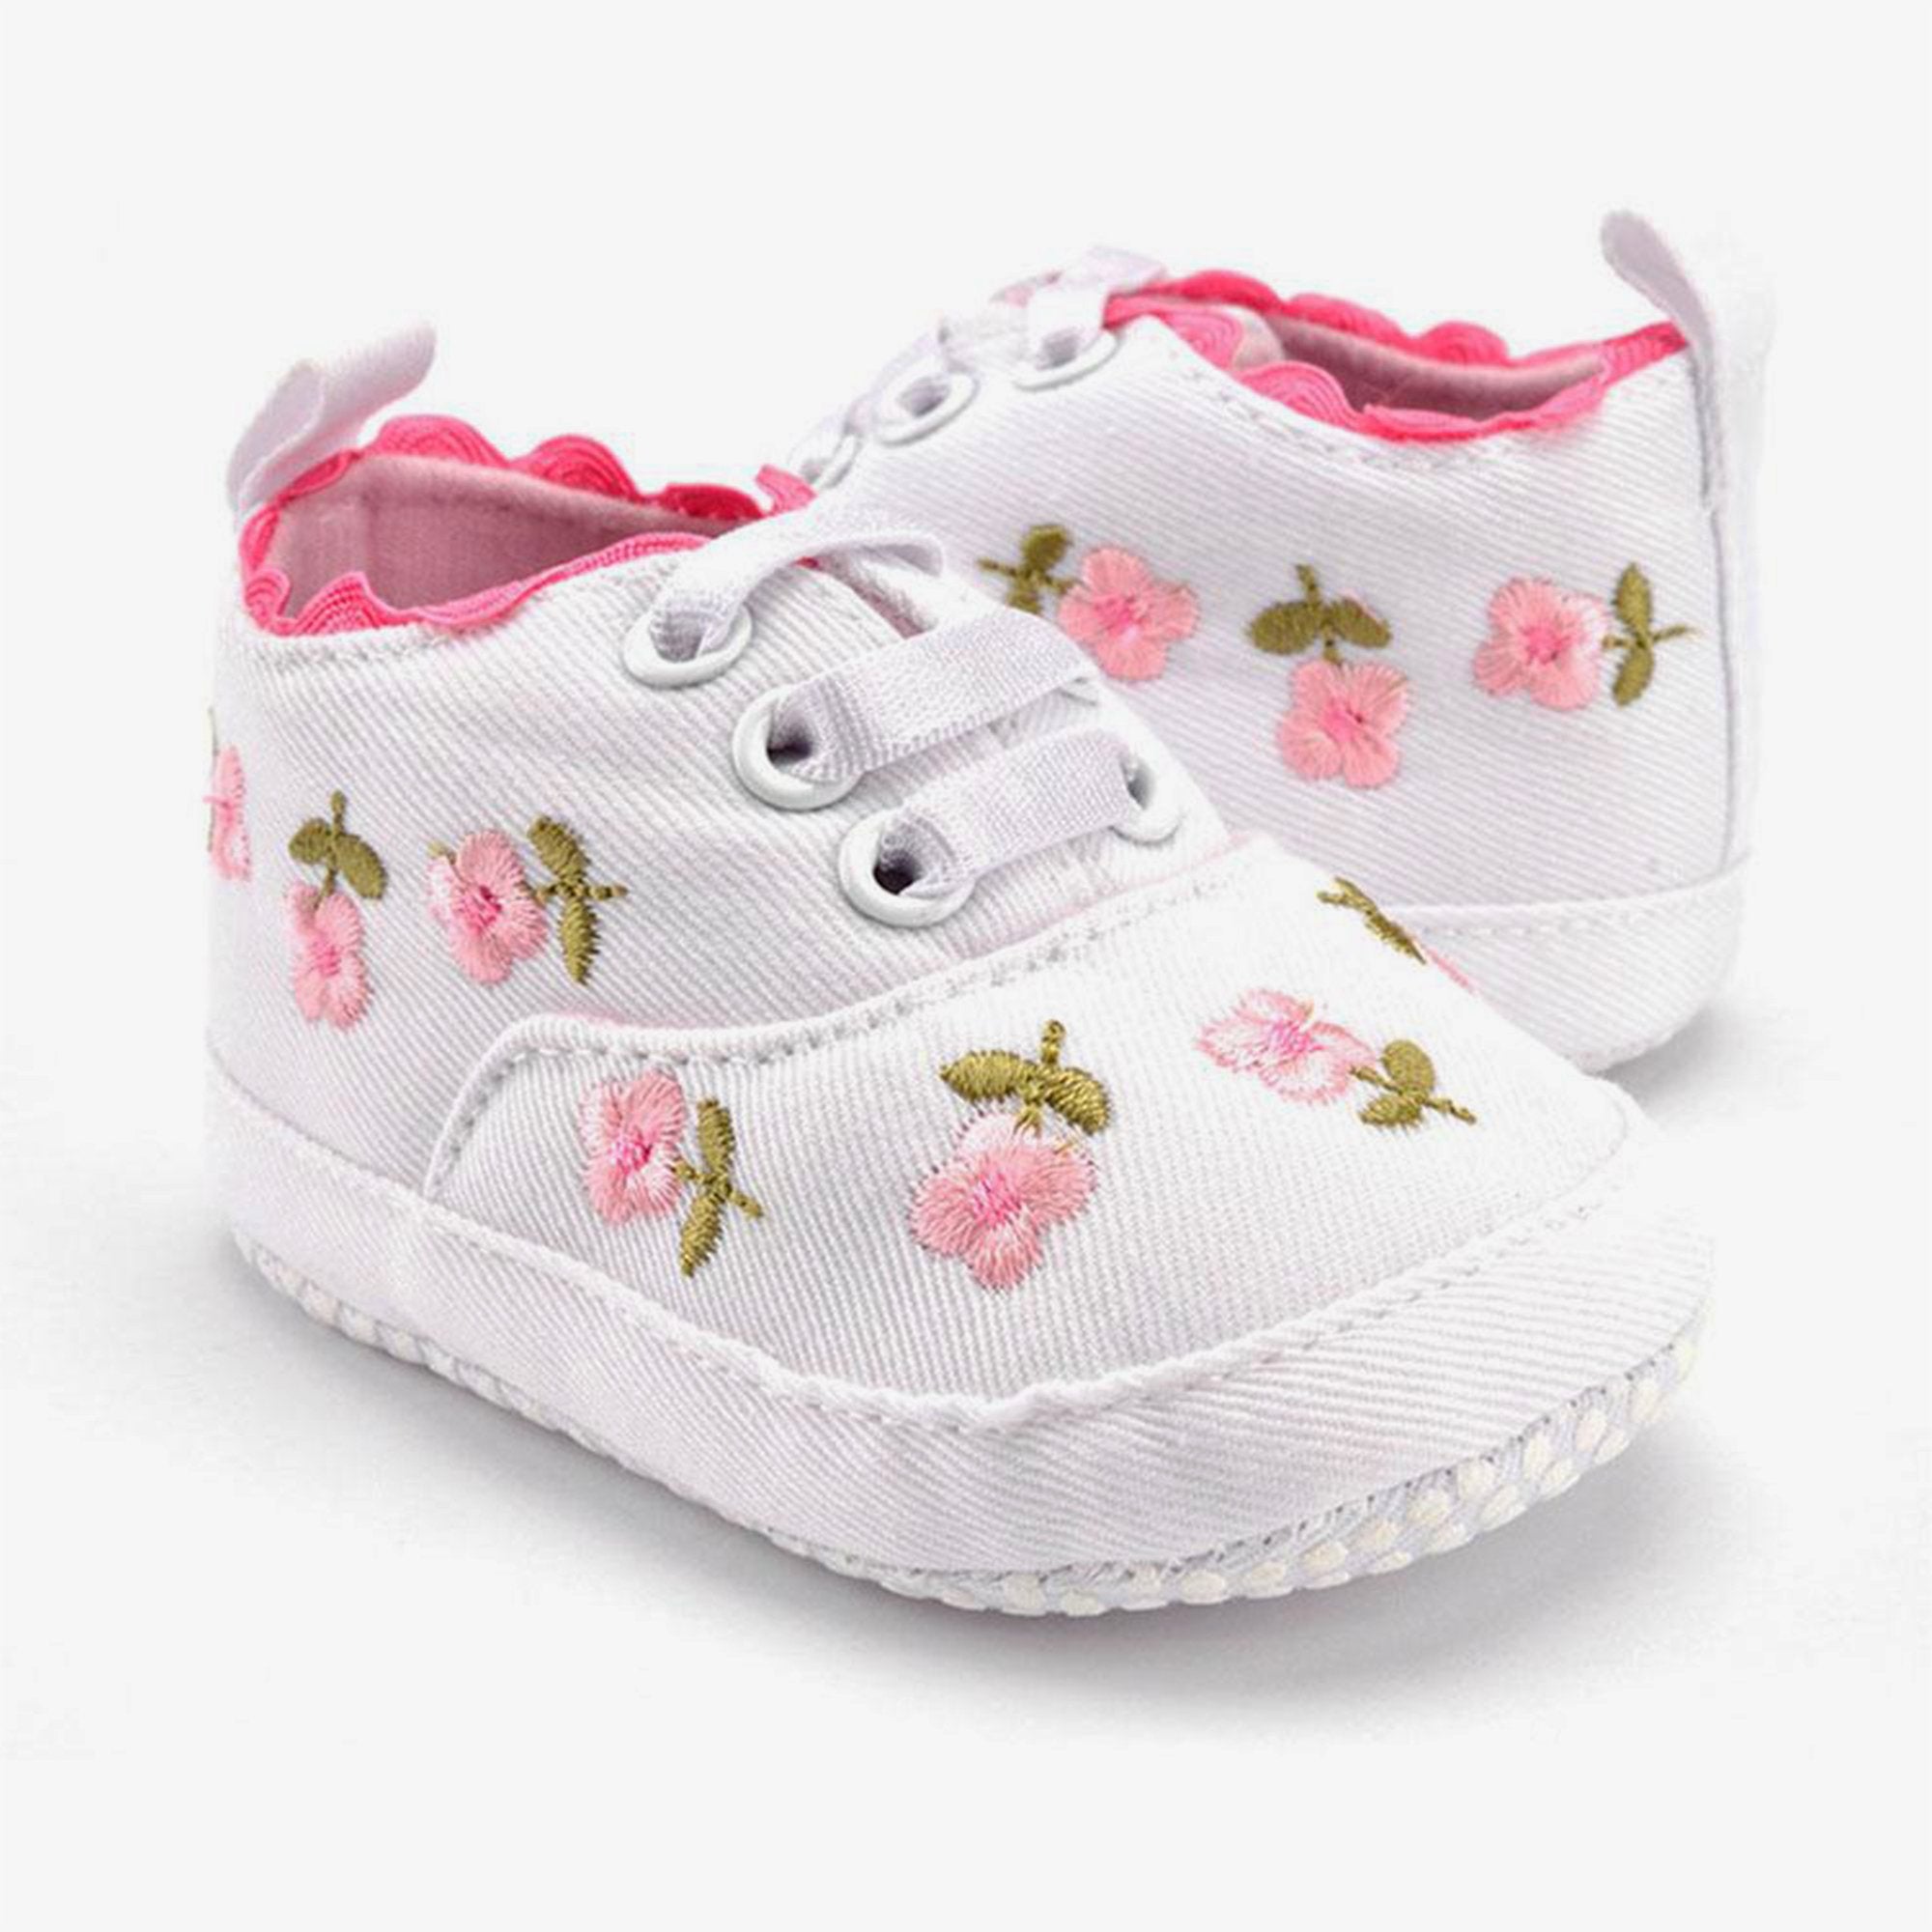 Zapatos de suela suave tipo tenis para bebé niña con estampado de flores bordadas y blancos 